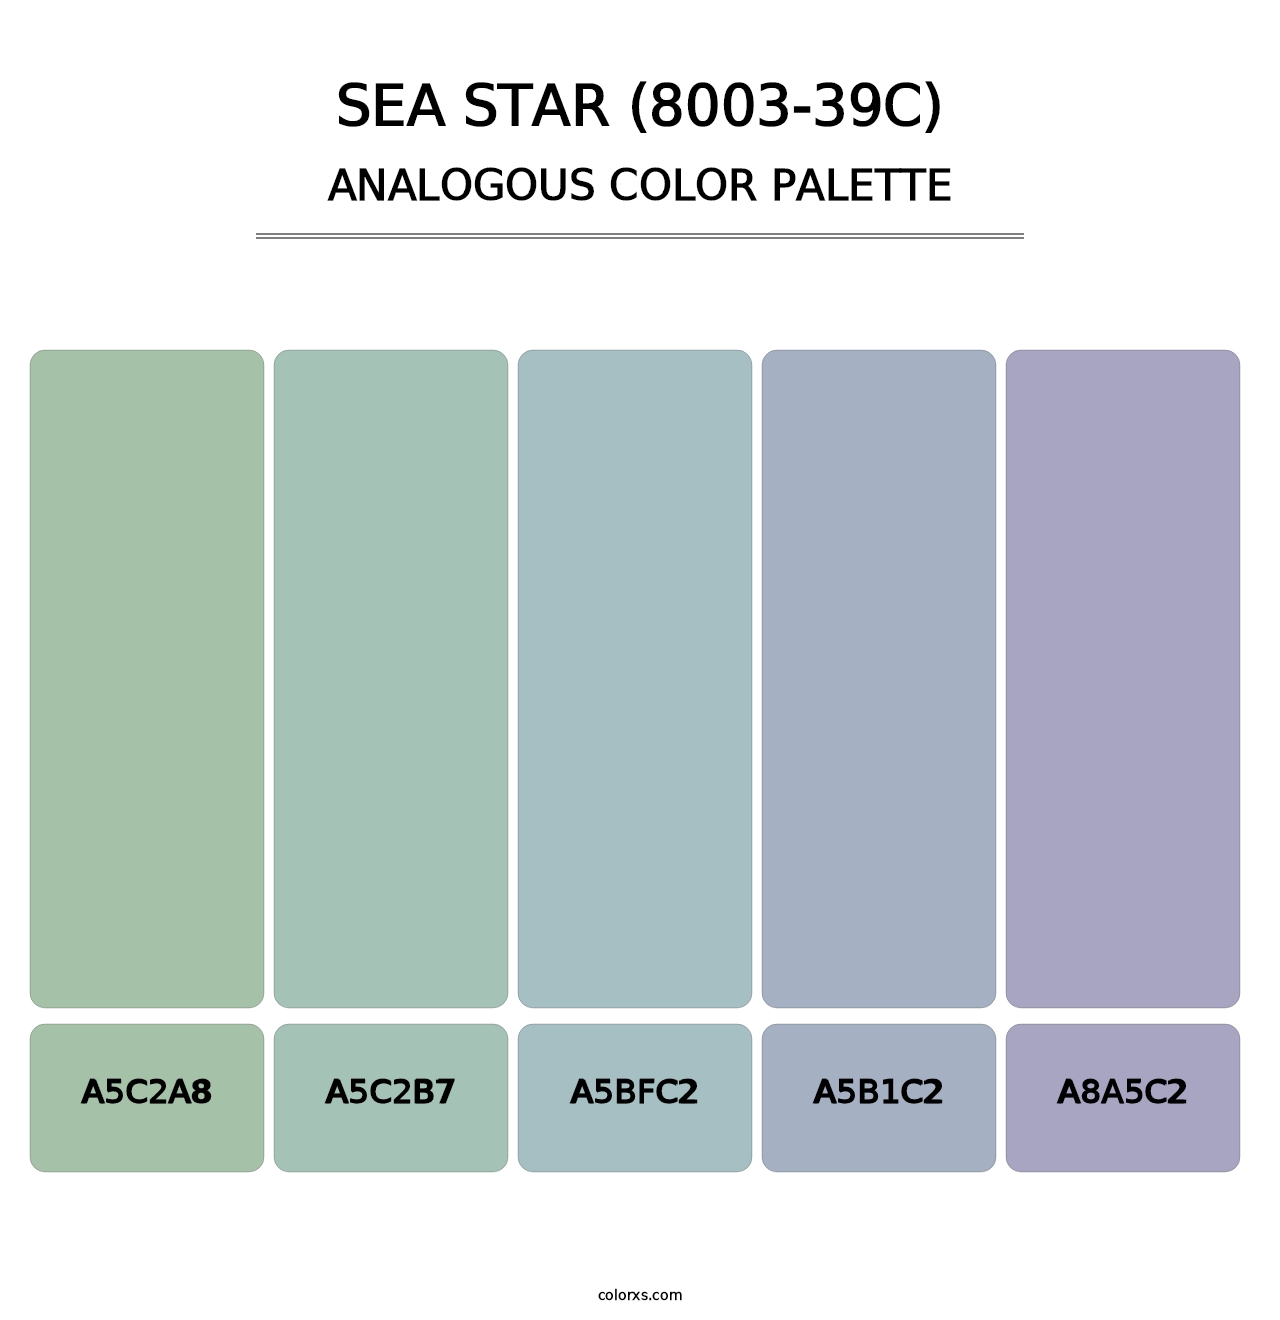 Sea Star (8003-39C) - Analogous Color Palette